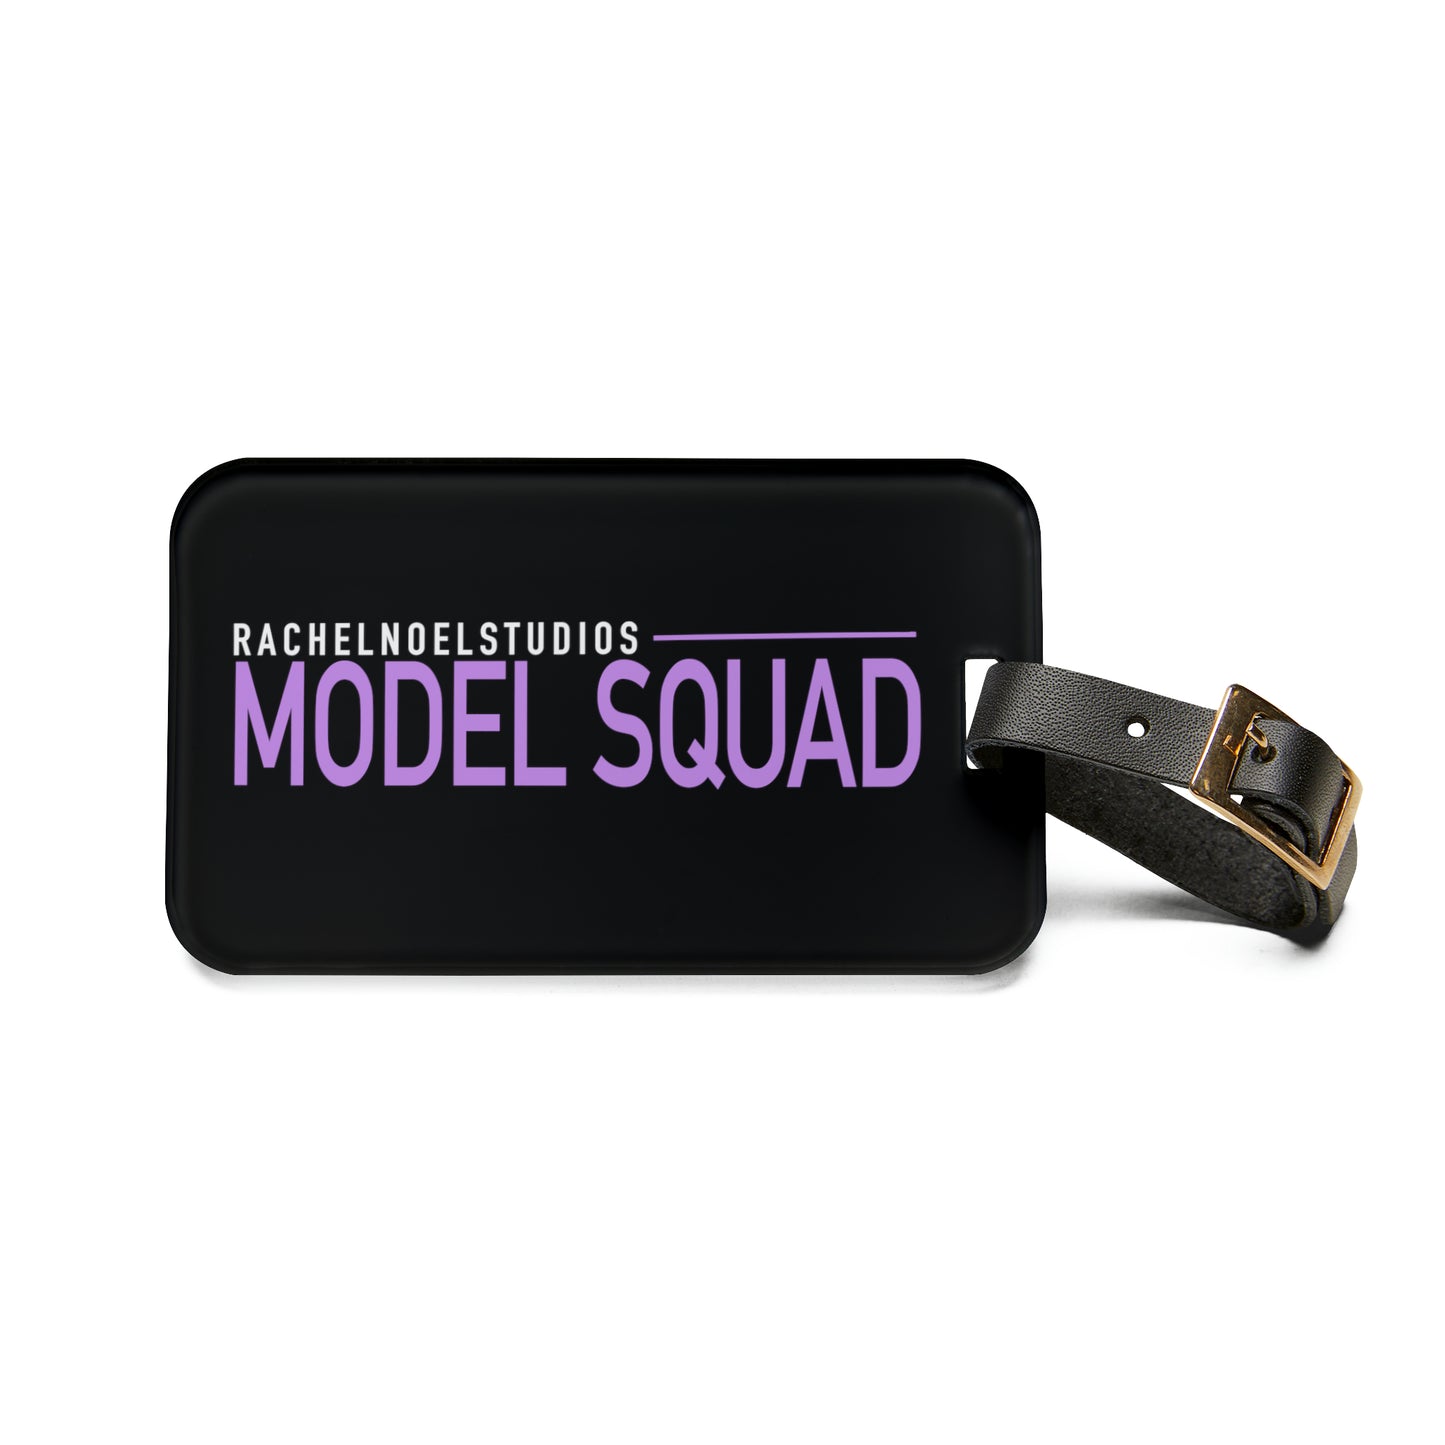 “Model Squad” Luggage Tag